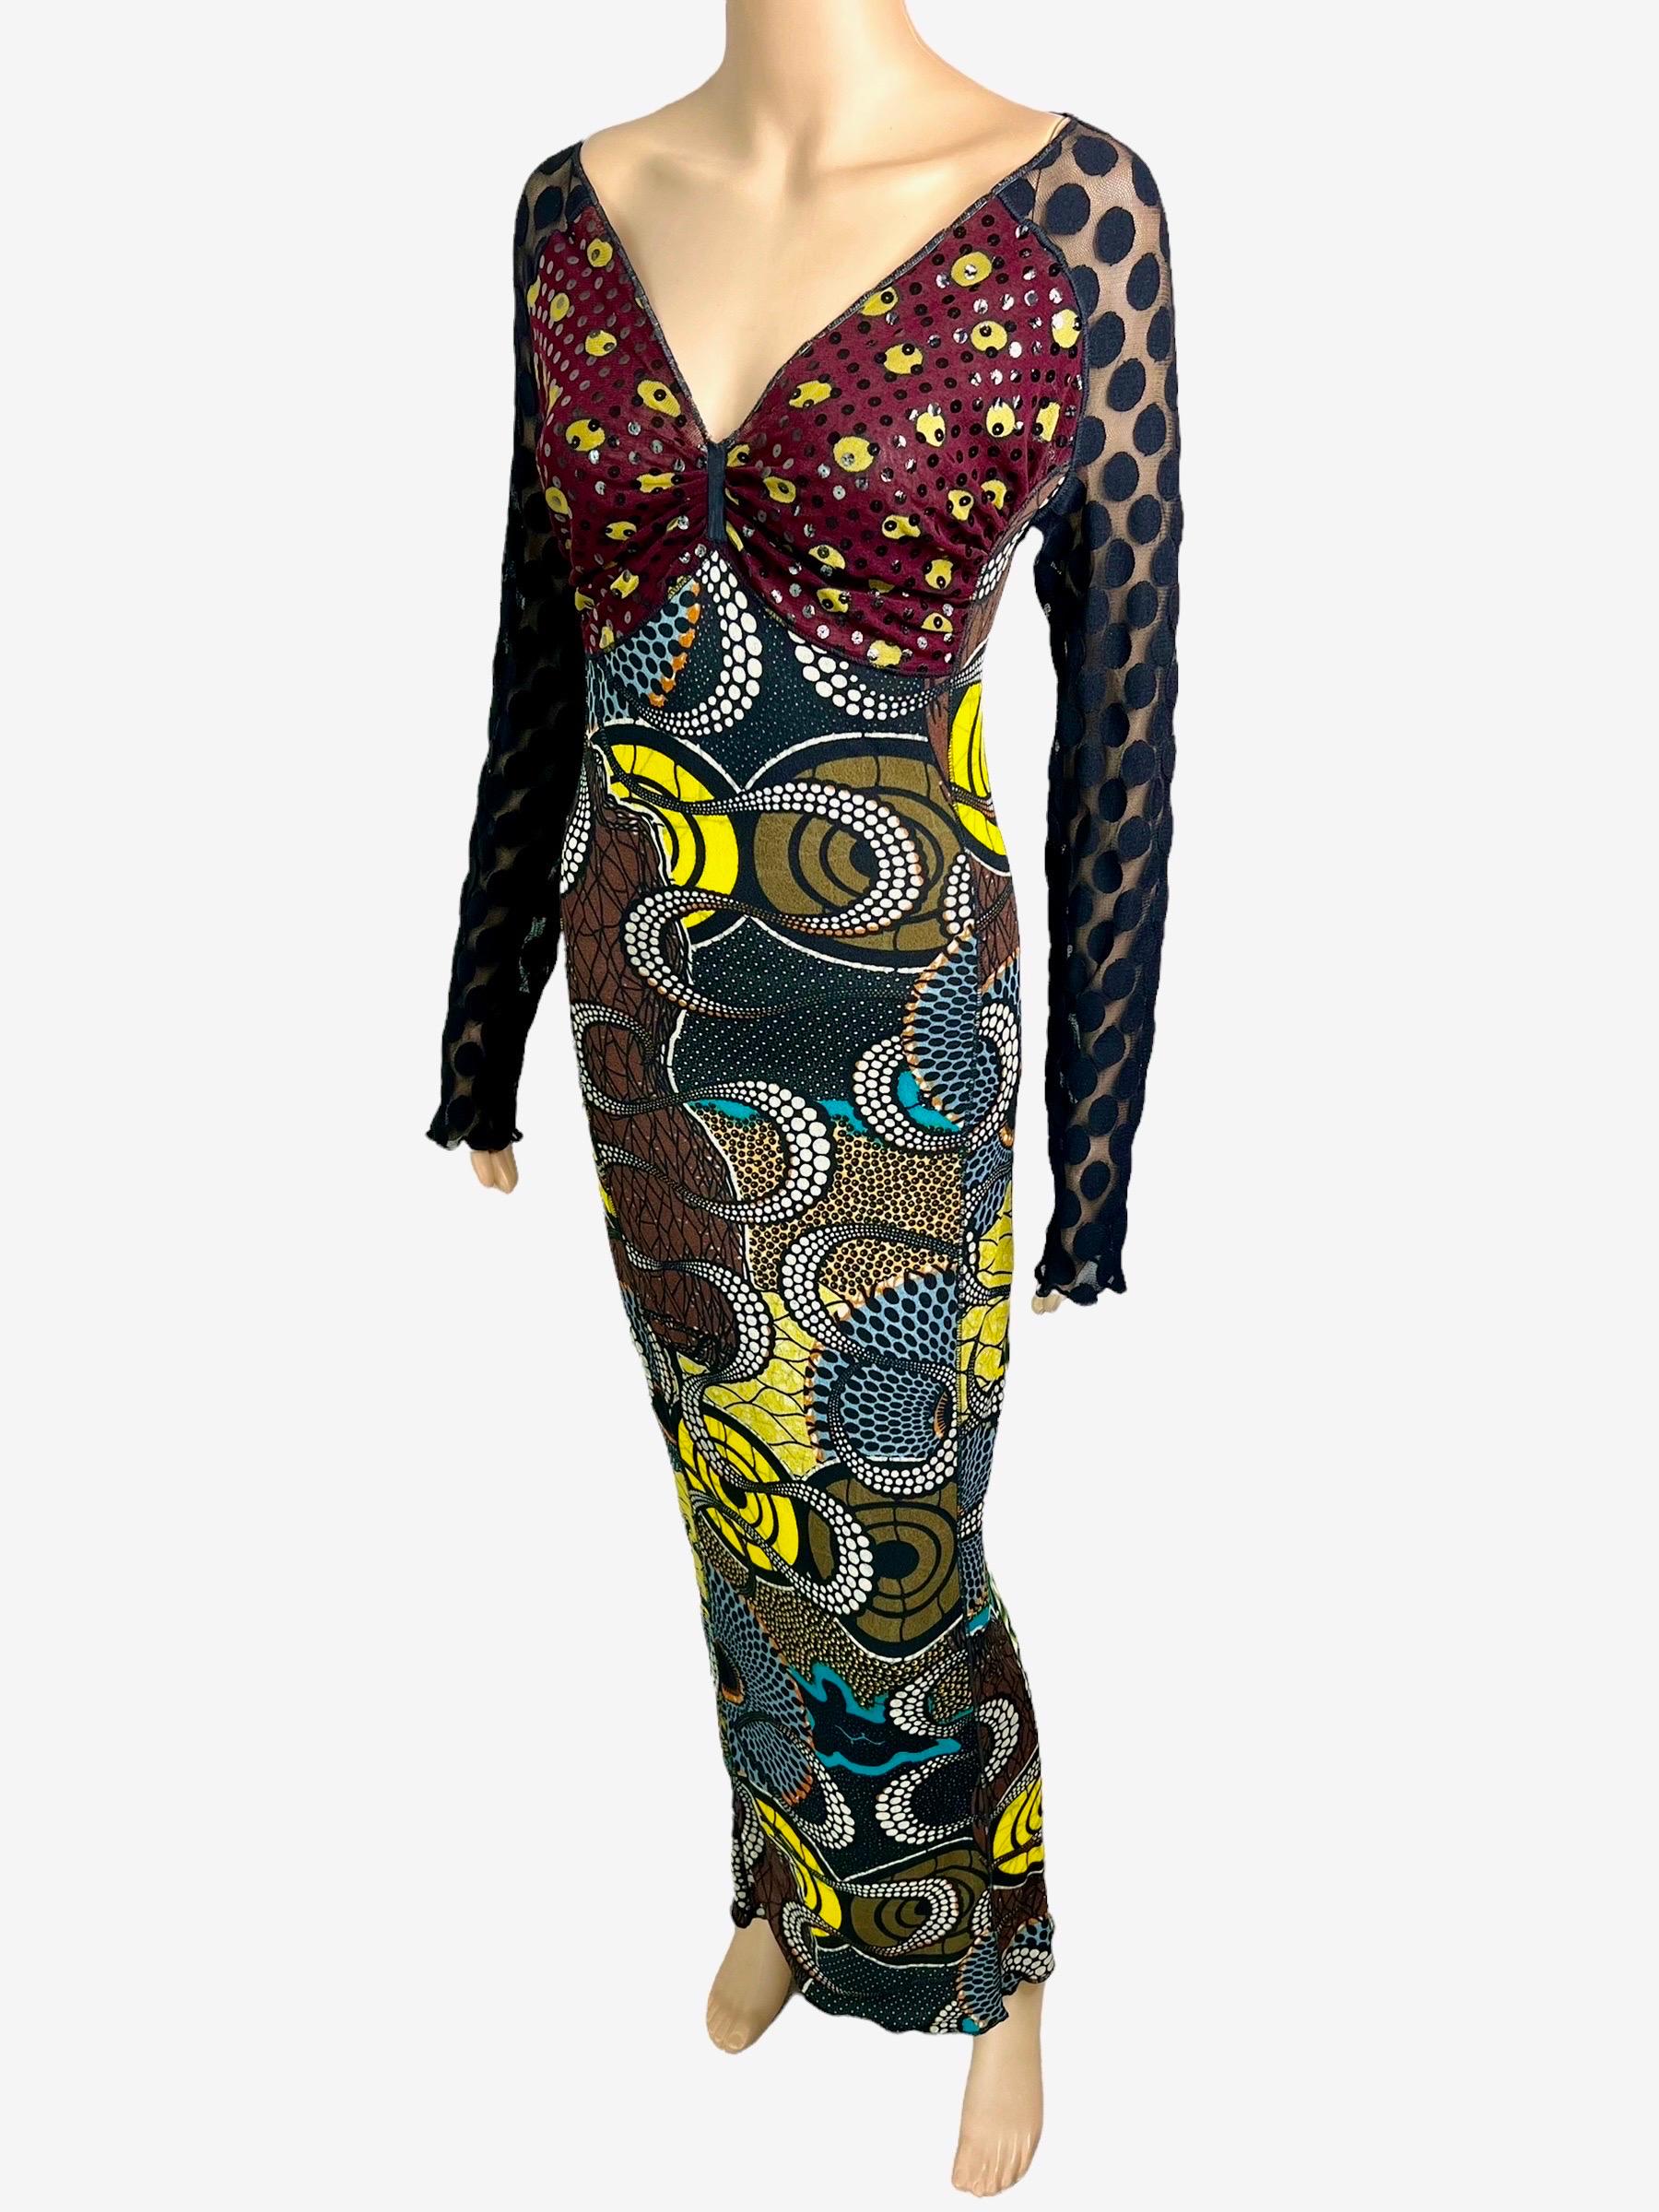 Black Jean Paul Gaultier Soleil c.1996 Op Art Circle Dots Print Cutout Back Maxi Dress For Sale